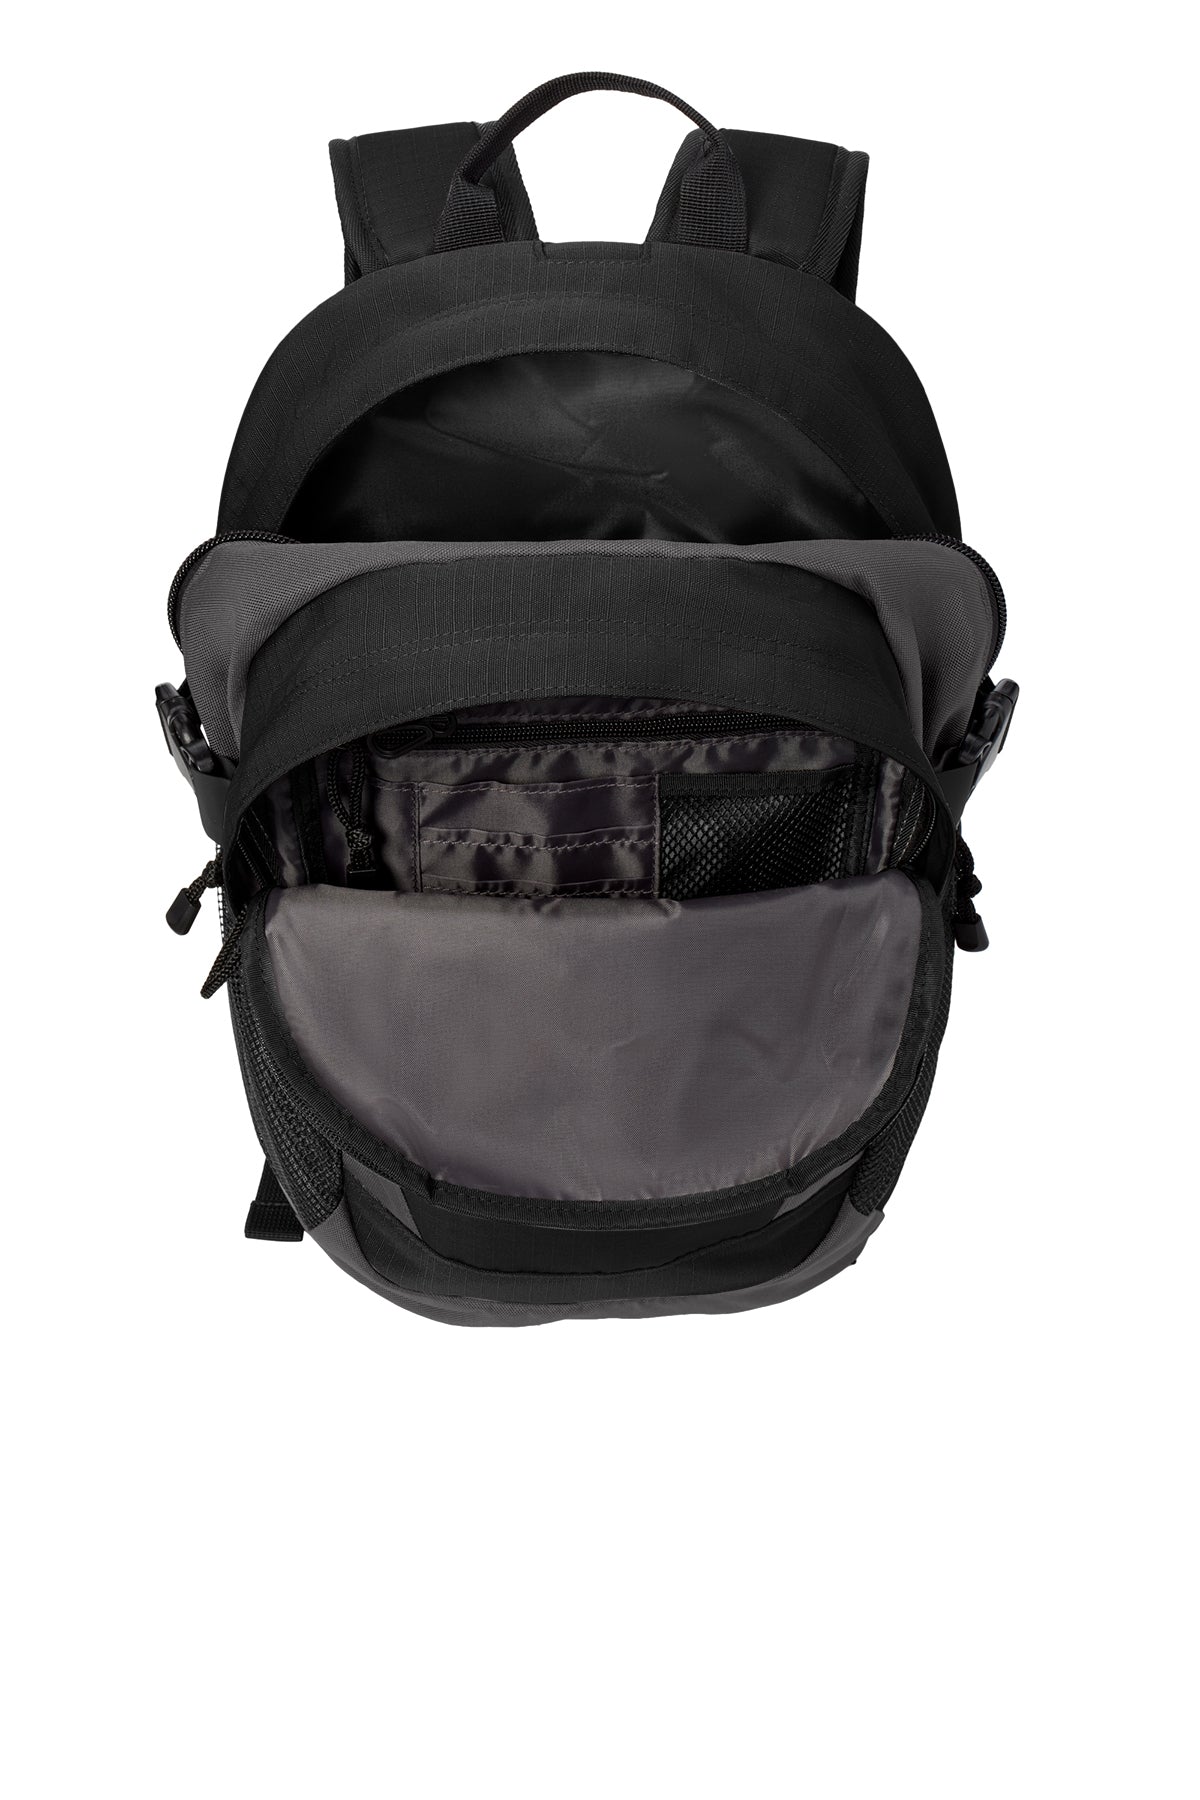 Eddie Bauer Custom Ripstop Backpacks, Black